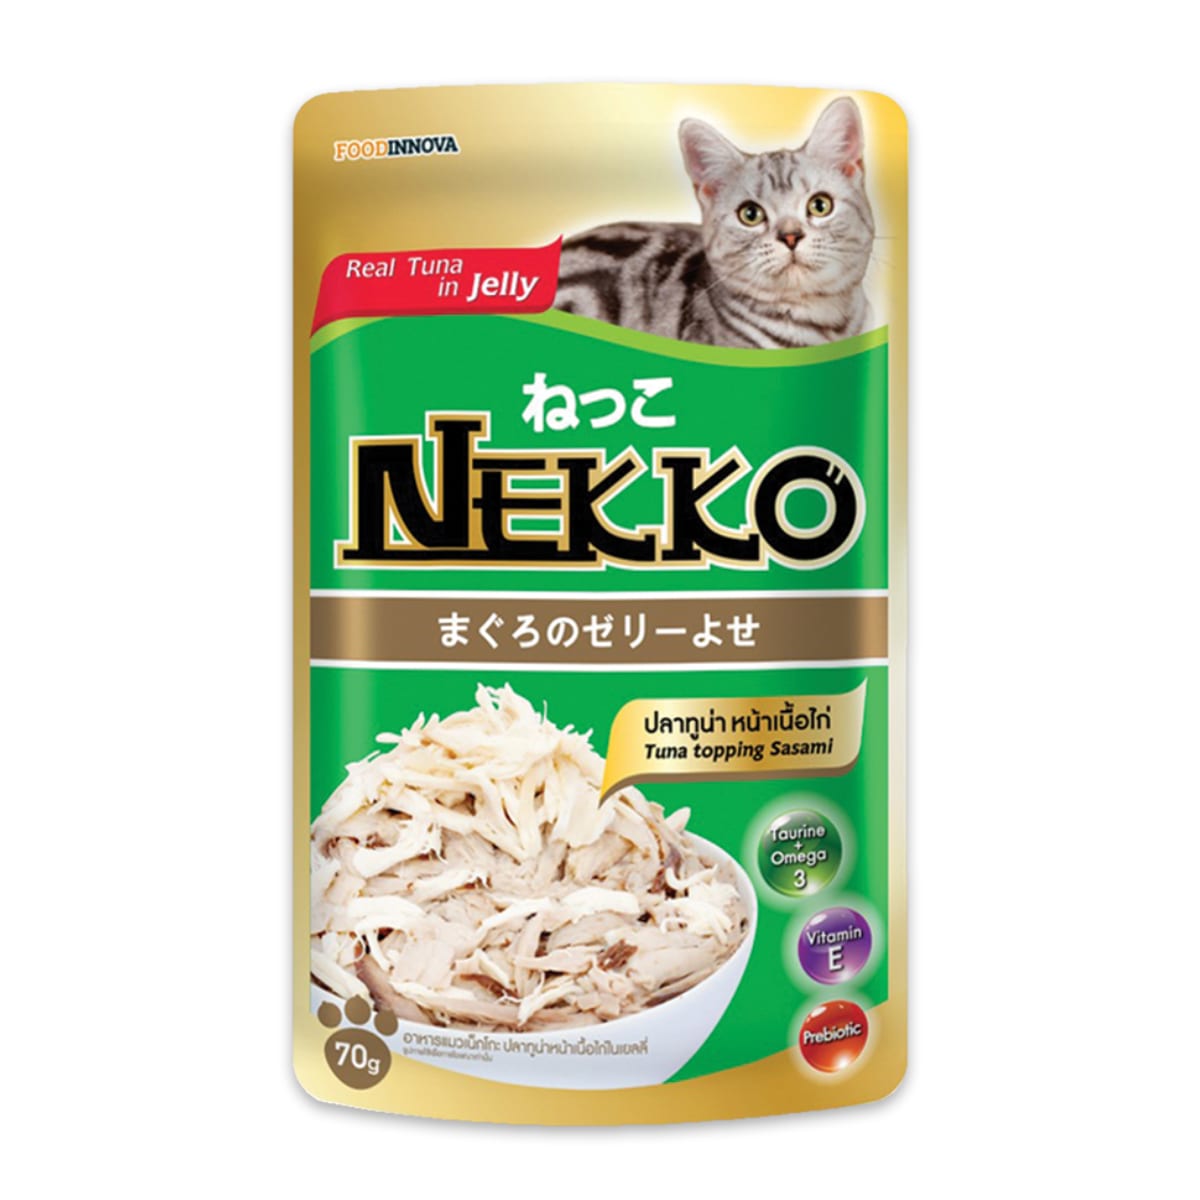 Nekko เน็กโกะ อาหารเปียก สำหรับแมว รสปลาทูน่าในเจลลี่เนื้อไก่ 70 G